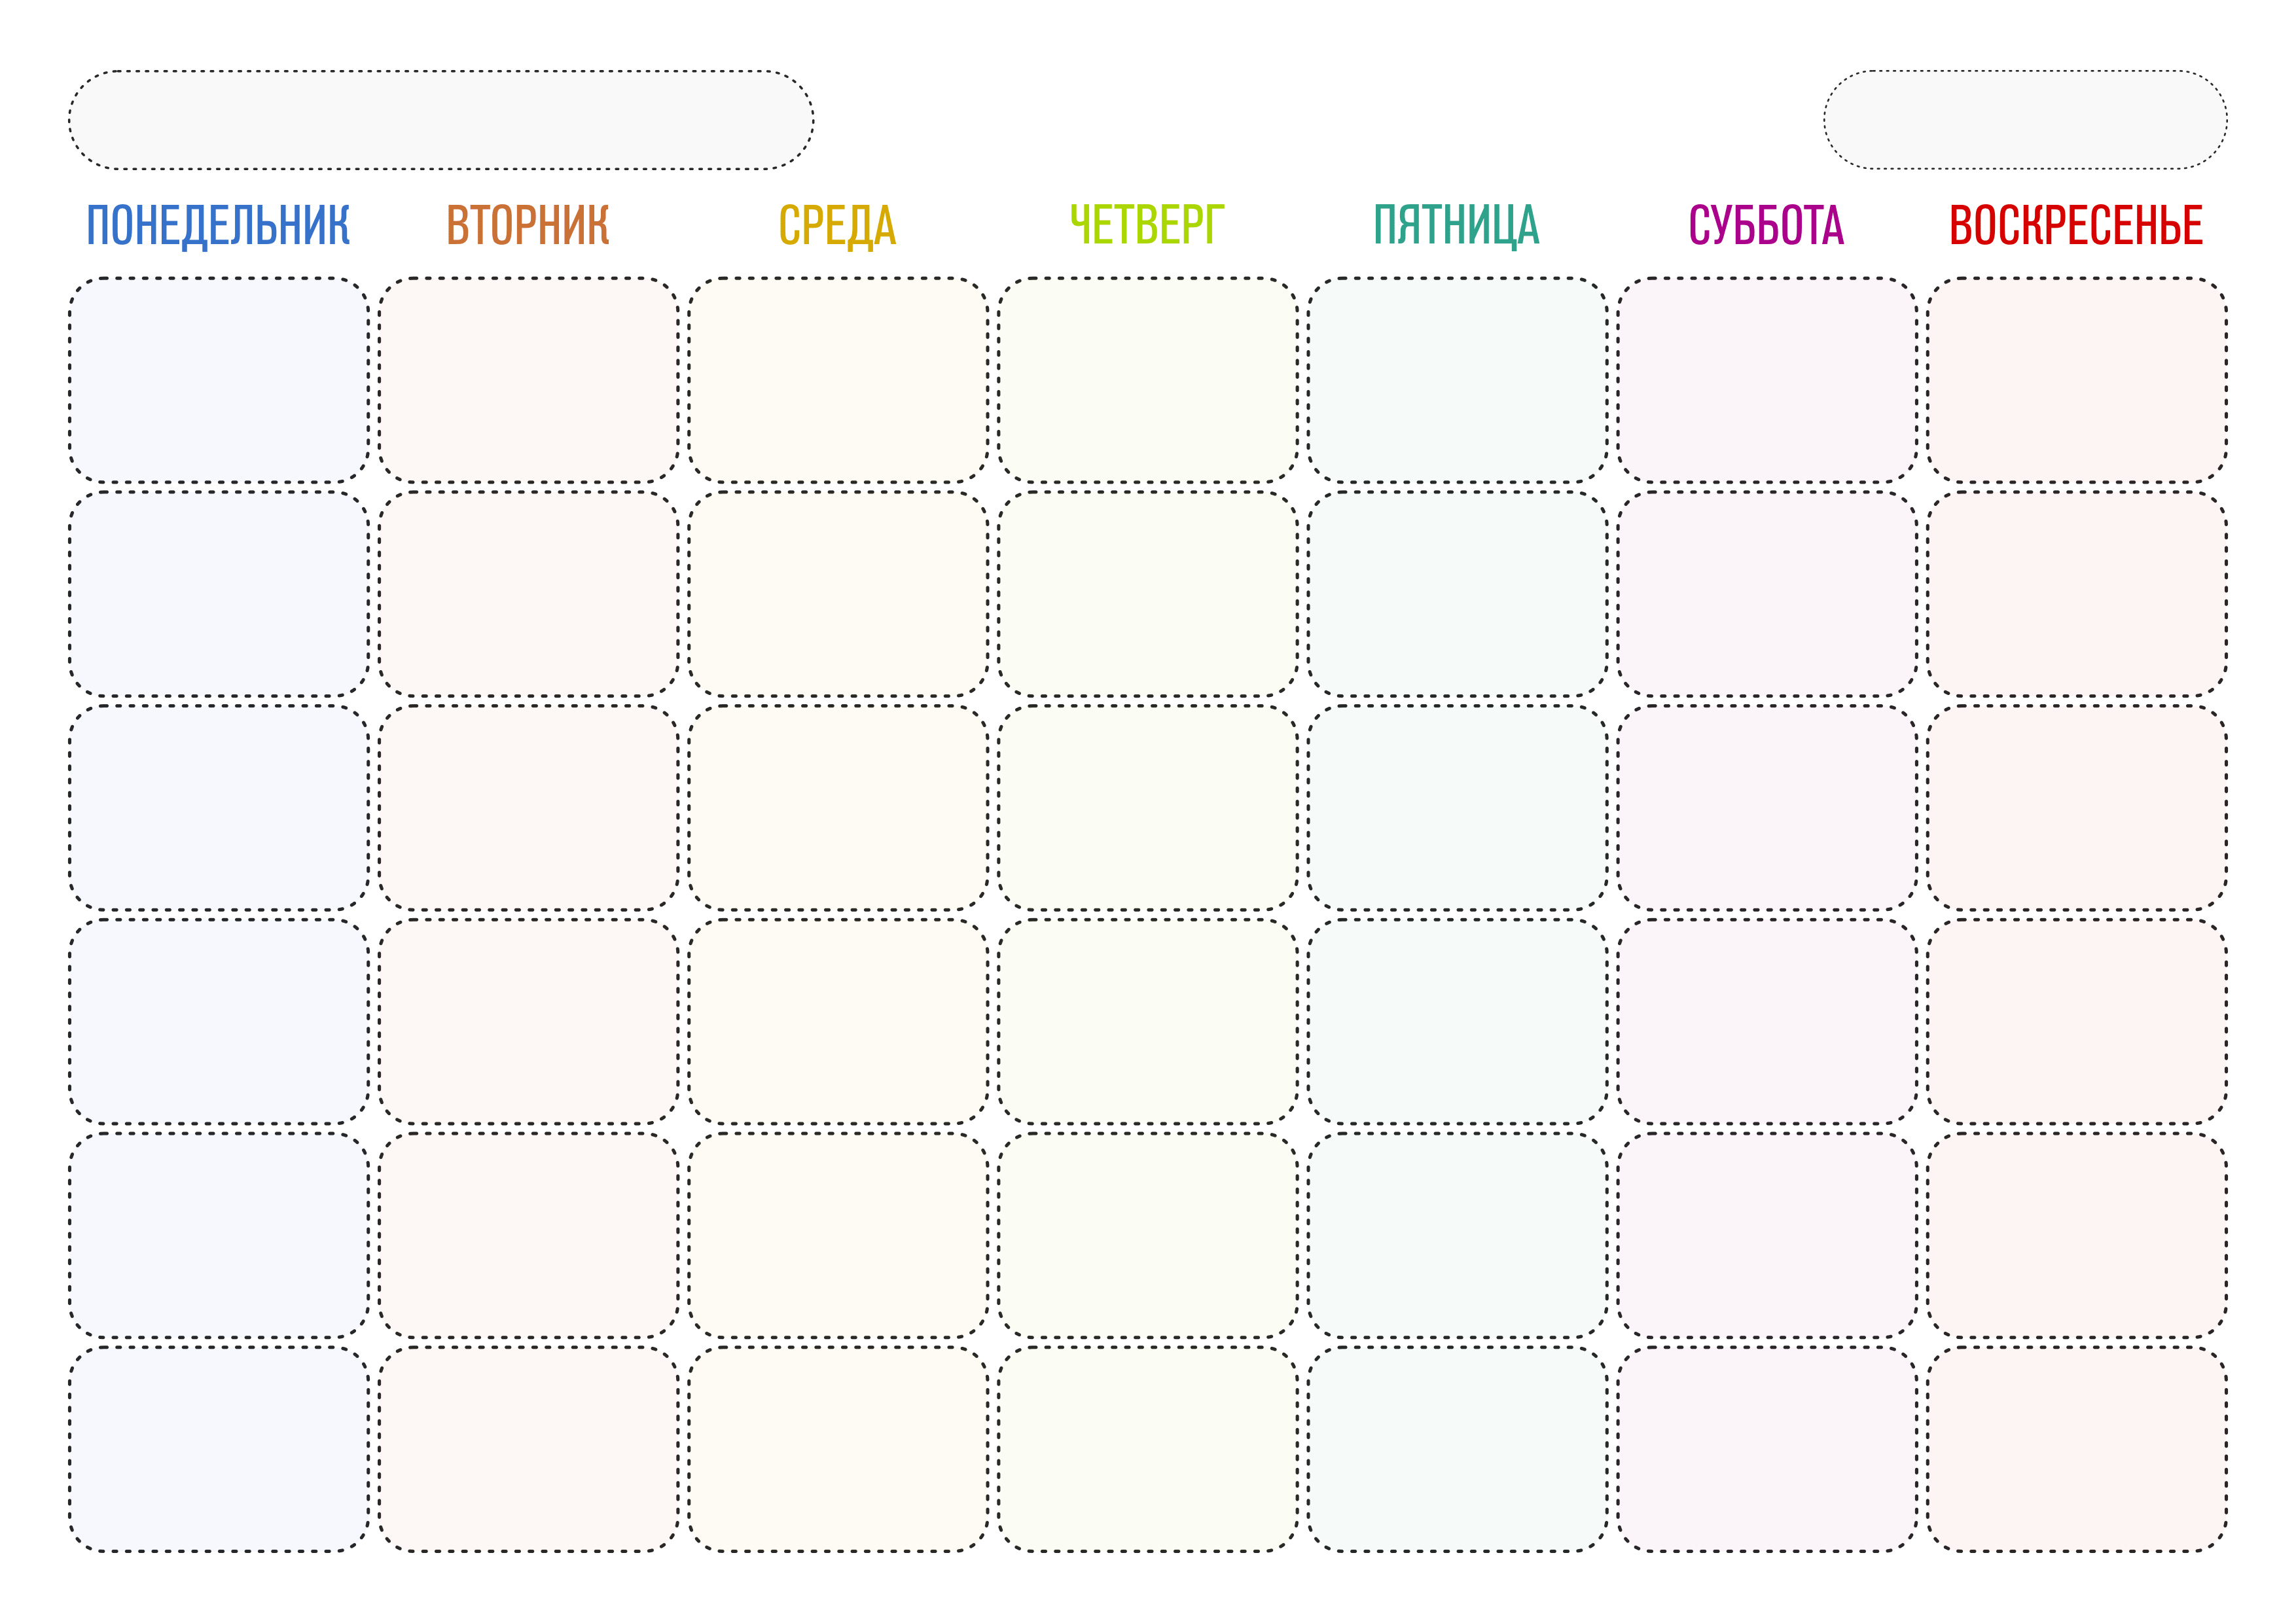 Как сделать календарь на месяц